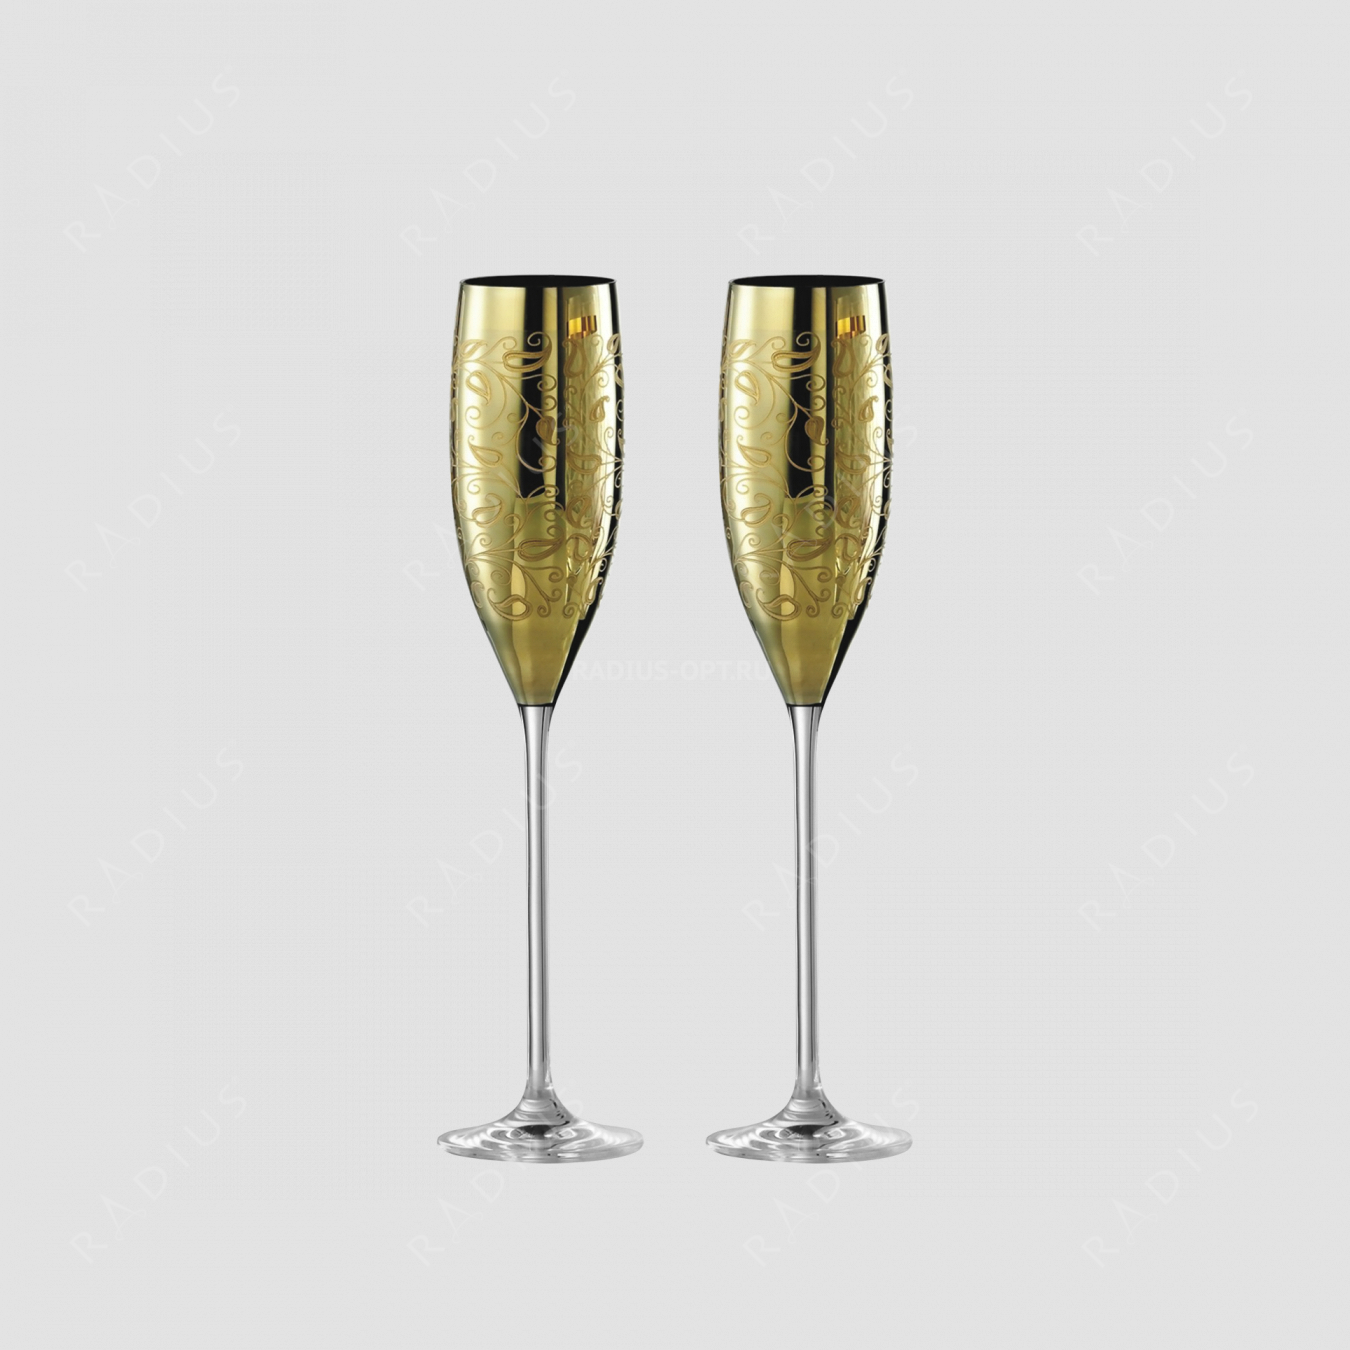 Набор из 2-х хрустальных бокалов для шампанского, объем: 180 мл, материал: бессвинцовый хрусталь, цвет: золото, серия Champagner Exklusiv, EISCH, Германия